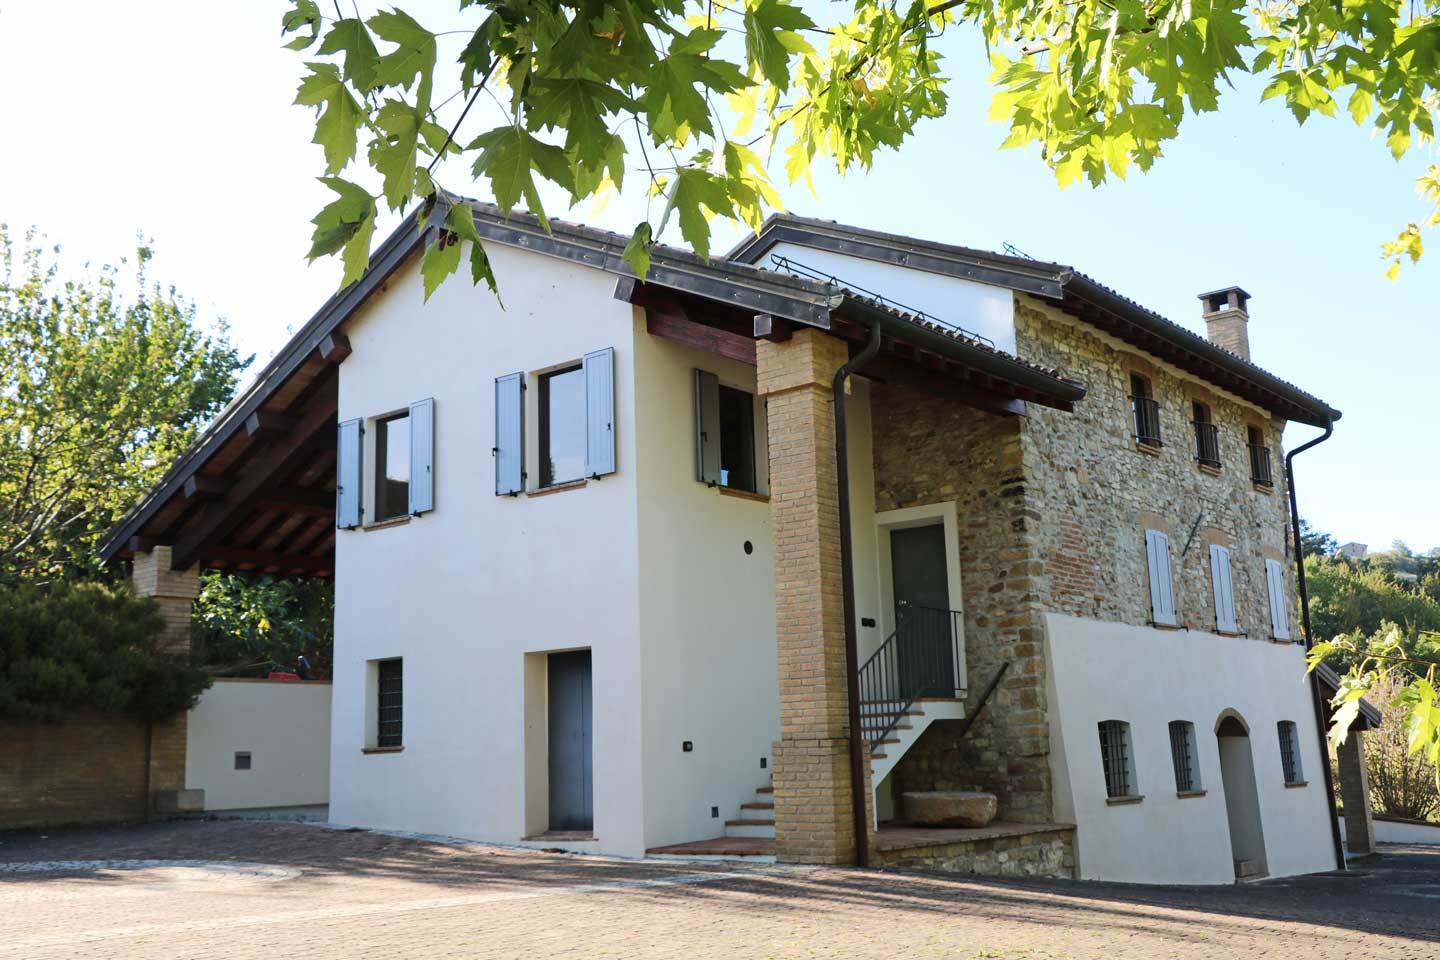 For sale cottage in quiet zone Felino Emilia-Romagna